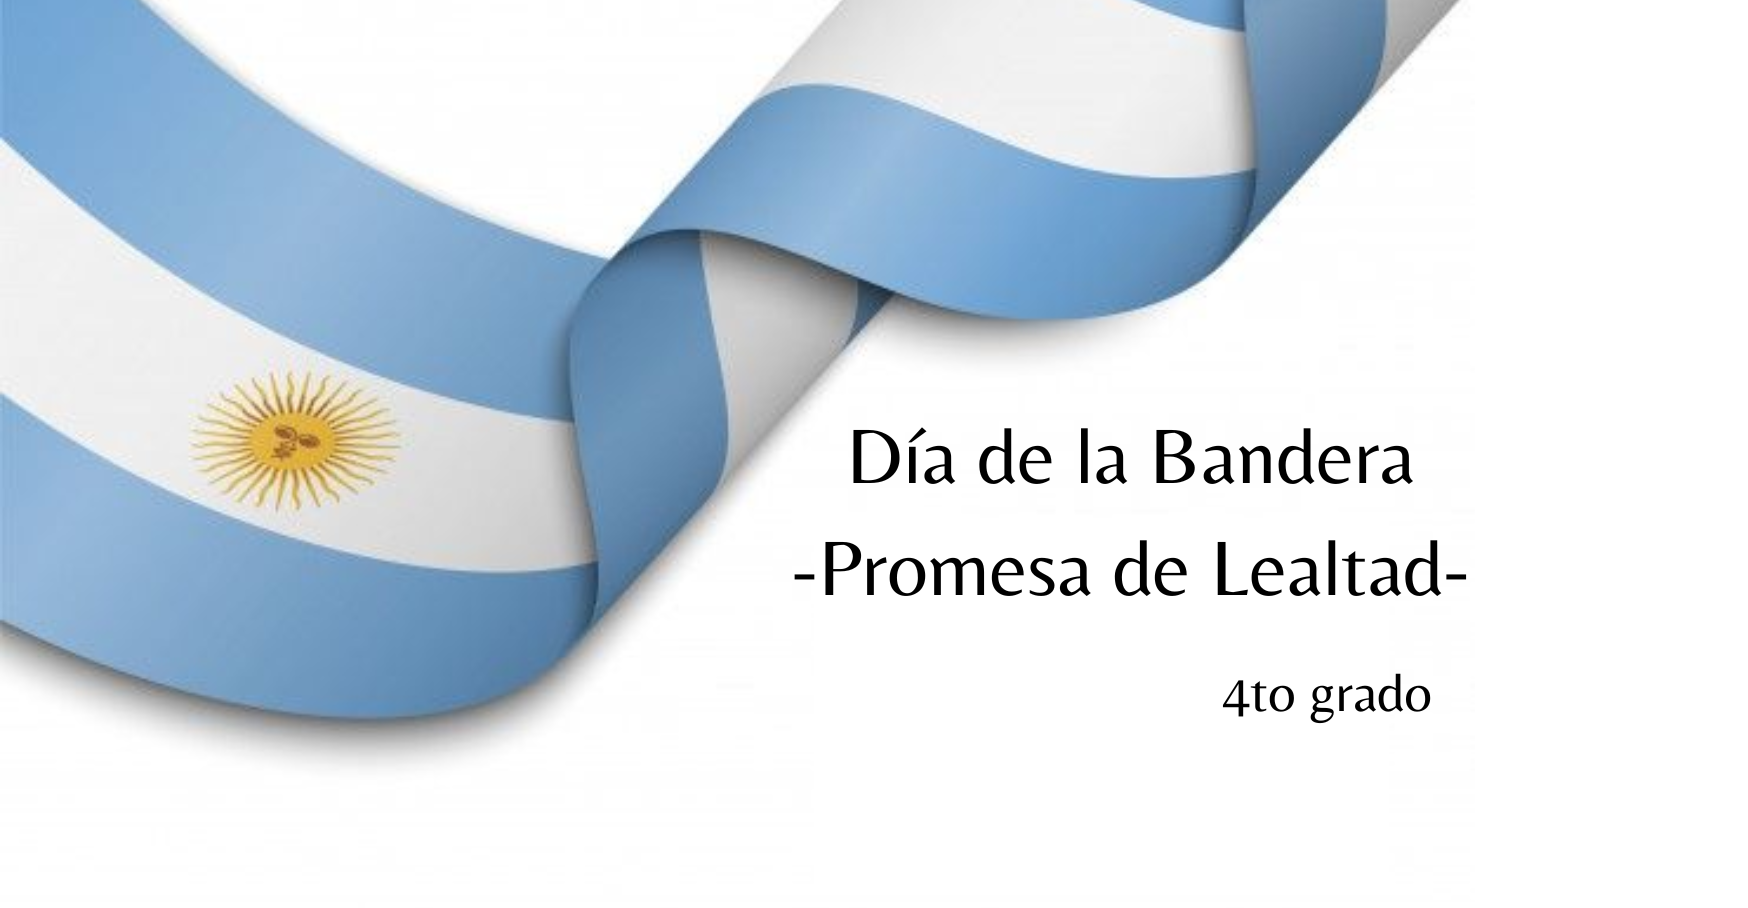 Conmemoracion-del-Dia-de-la-Bandera-Promesa-de-Lealtad-2-2